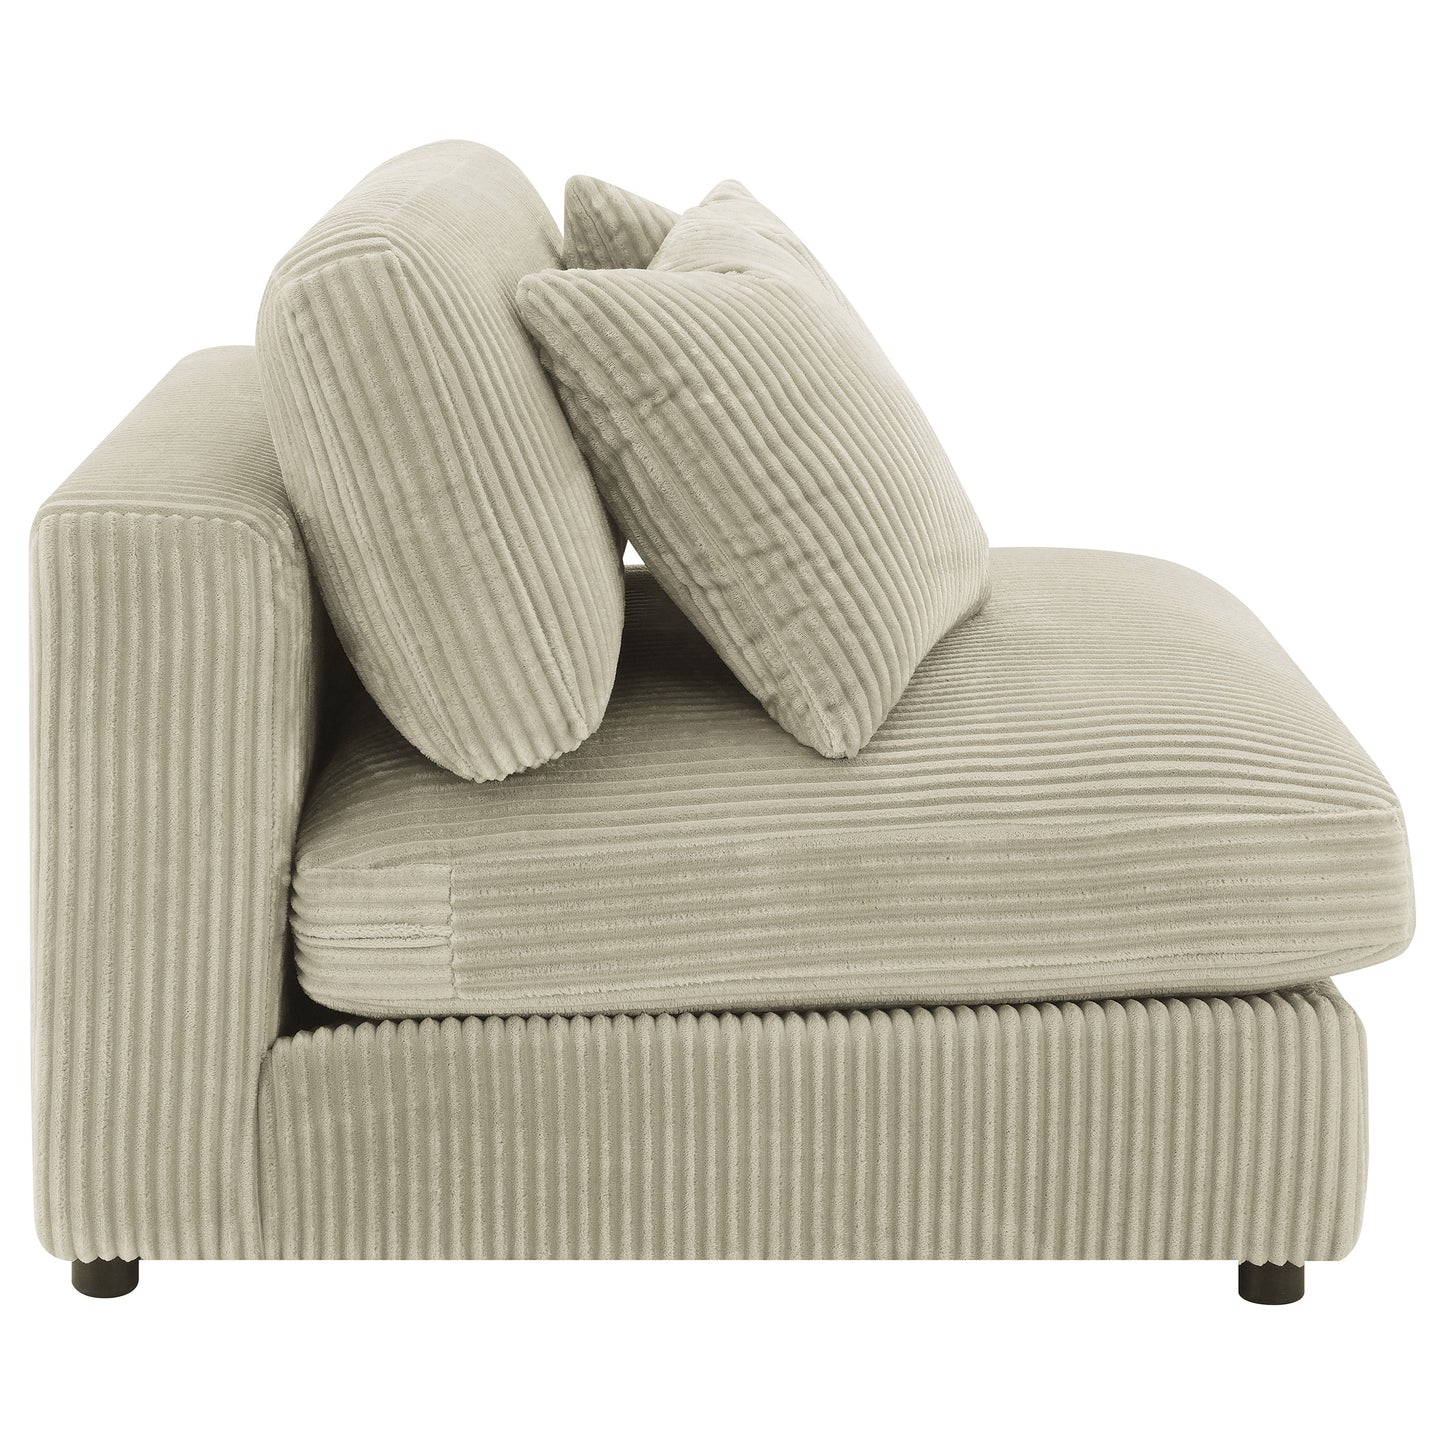 Blaine Upholstered Armless Chair Sand